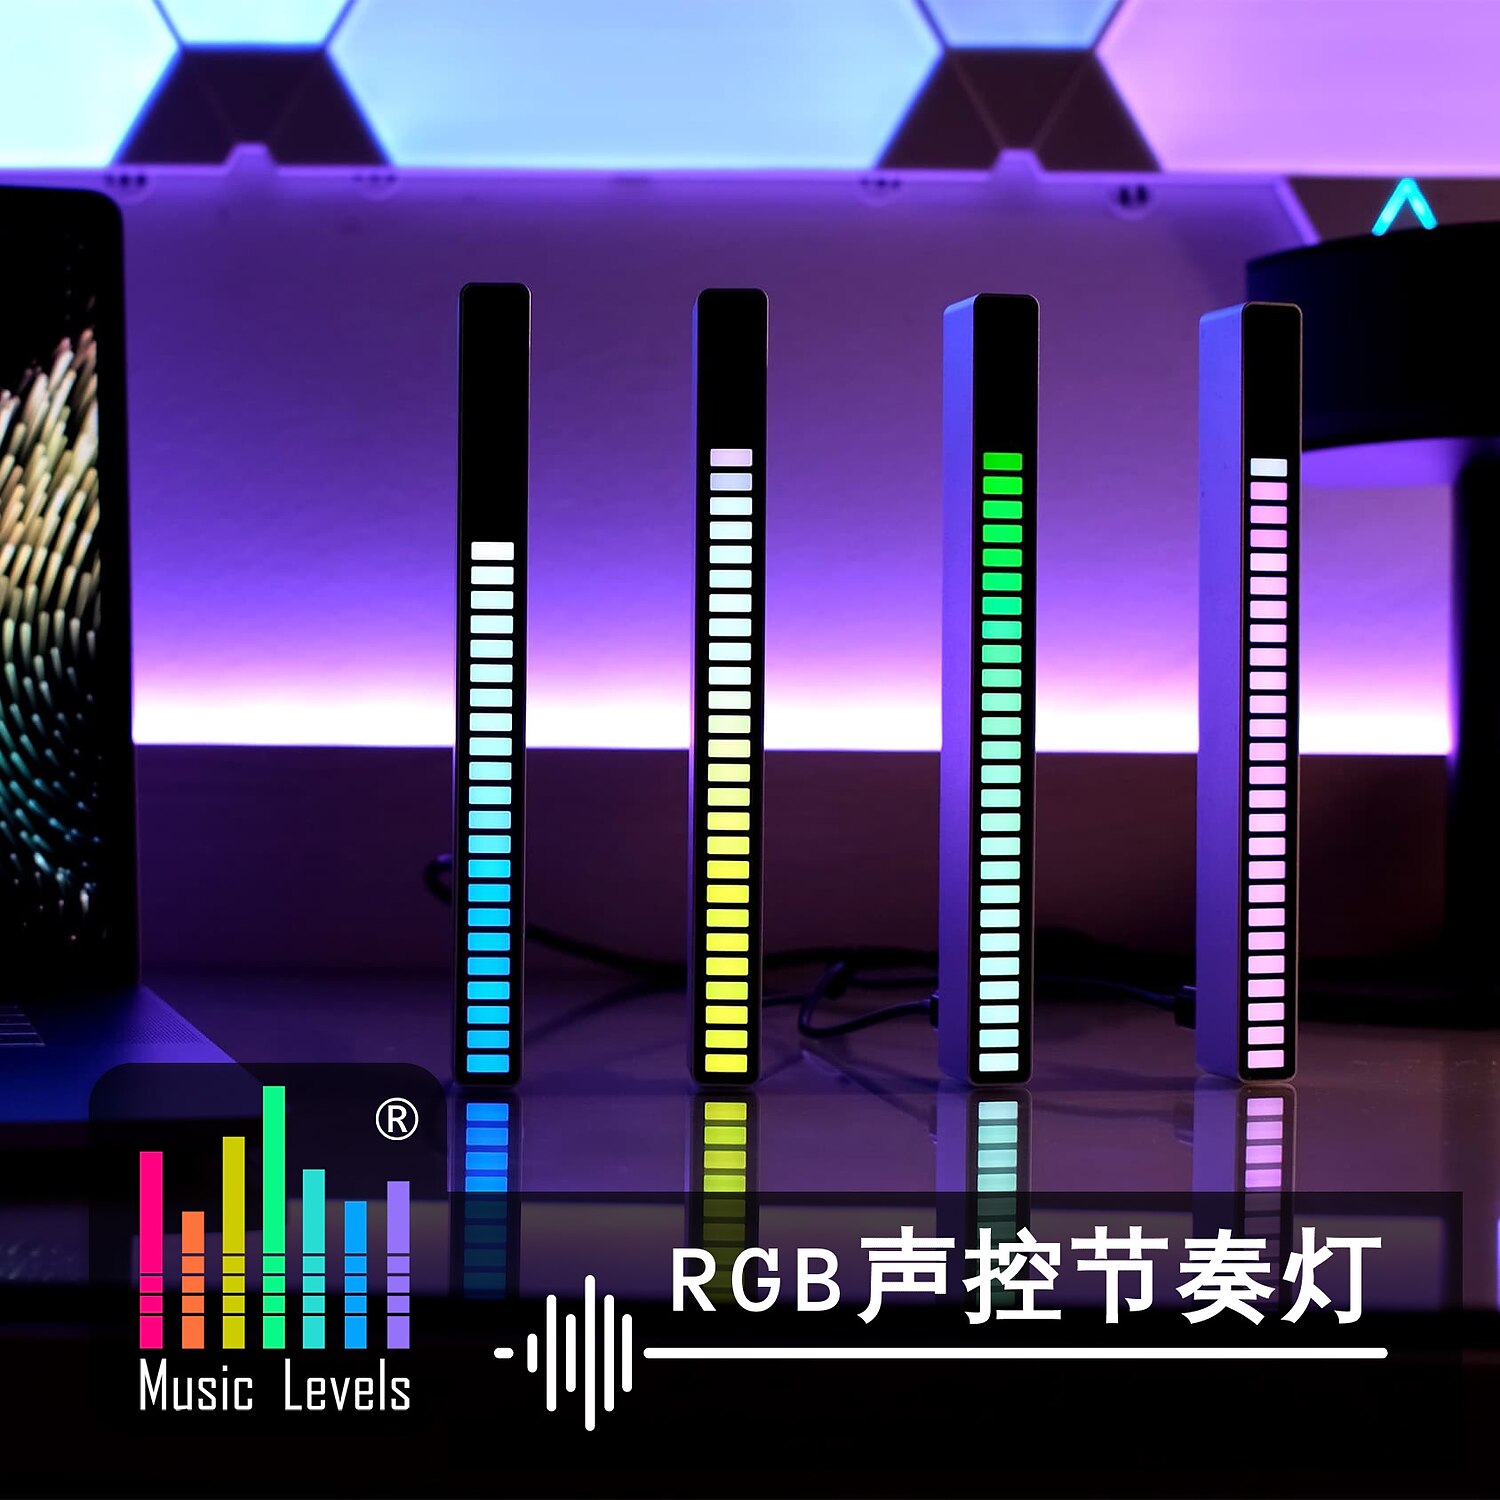 2022年 rgb音声起動ピックアップリズムライトクリエイティブなカラフルなサウンドコントロールアンビエントライト、32ビット音楽レベルインジケーター カー 8791853 コレクション – €31.99